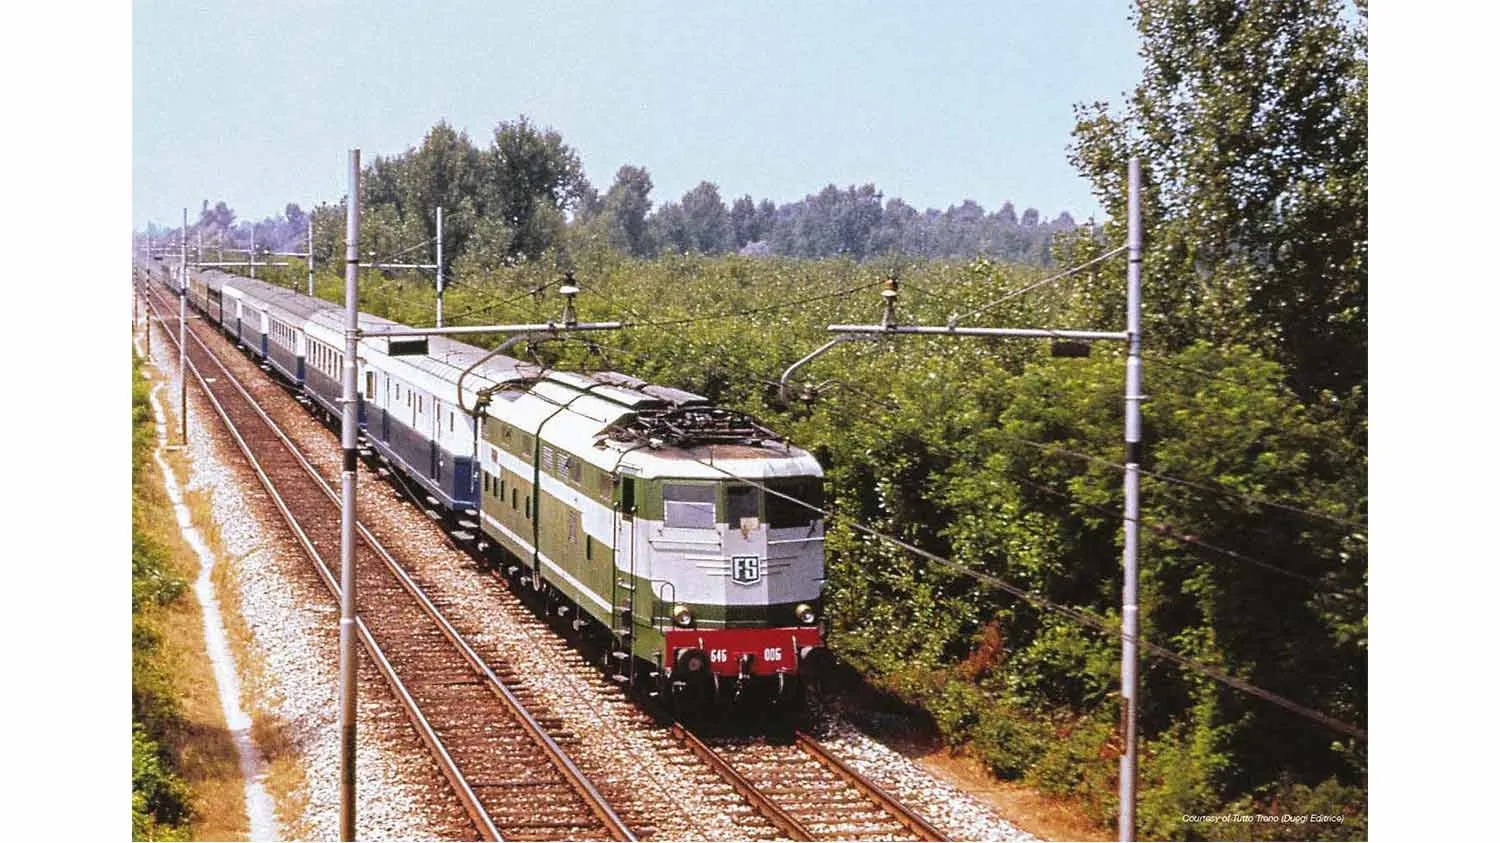 Rivarossi (H0 1:87) FS, schneller Zug Å¡Treno AzzurroËœ, von einem Mail-GepÃ¤ck van Typ 49, Typ 2. Klasse 59, zwei der 1. Klasse Typ 59 in der blauen und hellblauen Lackierung, Periode III zusammengesetzt gesetzt